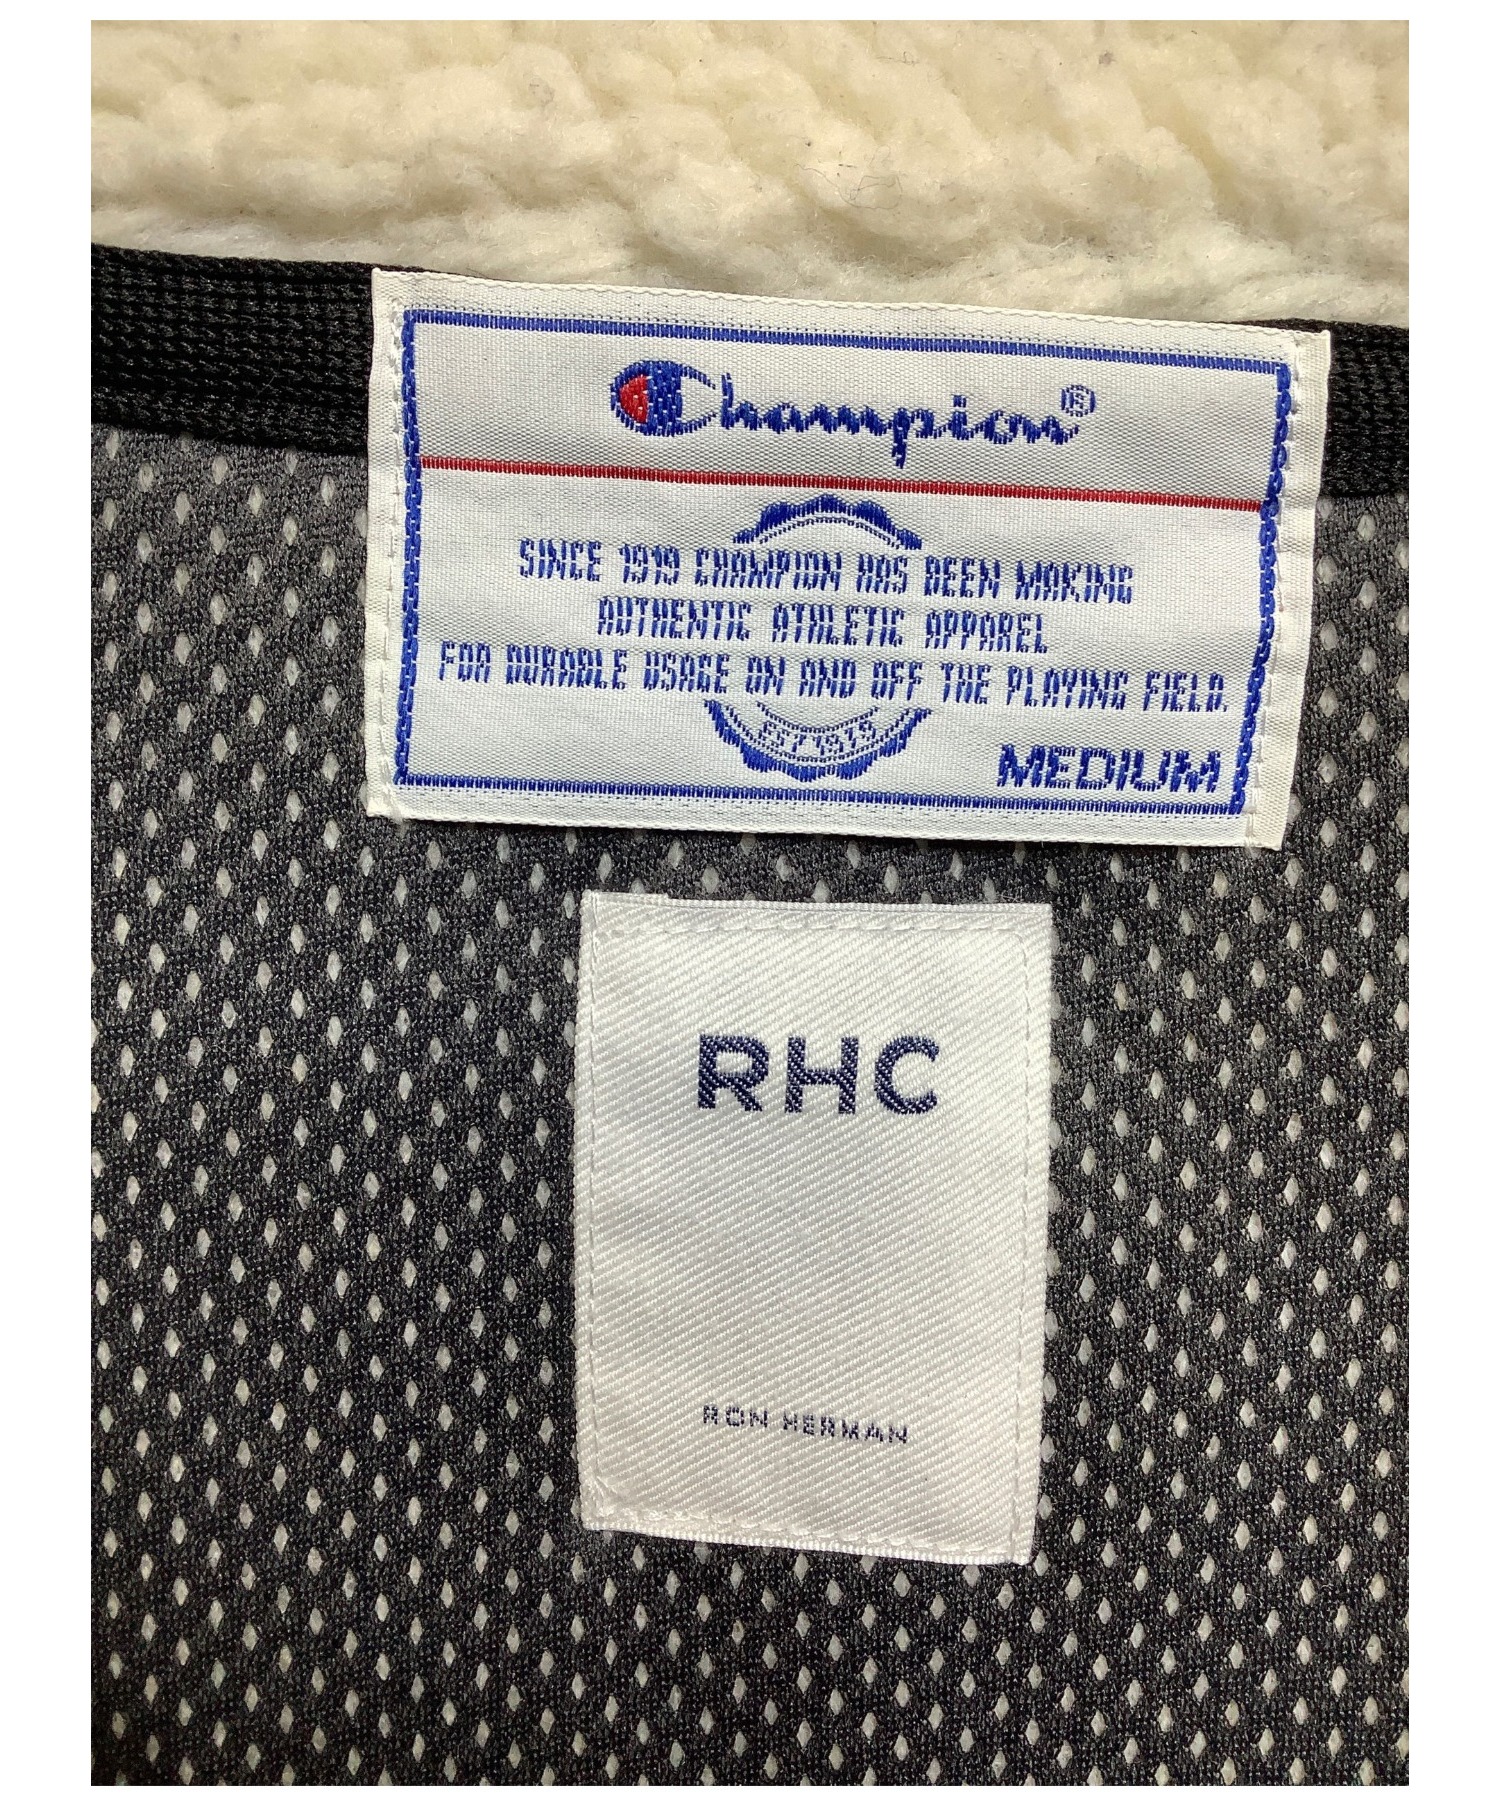 Champion×RHC Ron Herman (チャンピオン×アールエイチシー ロンハーマン) ボアジャケット ベージュ×ネイビー サイズ:M